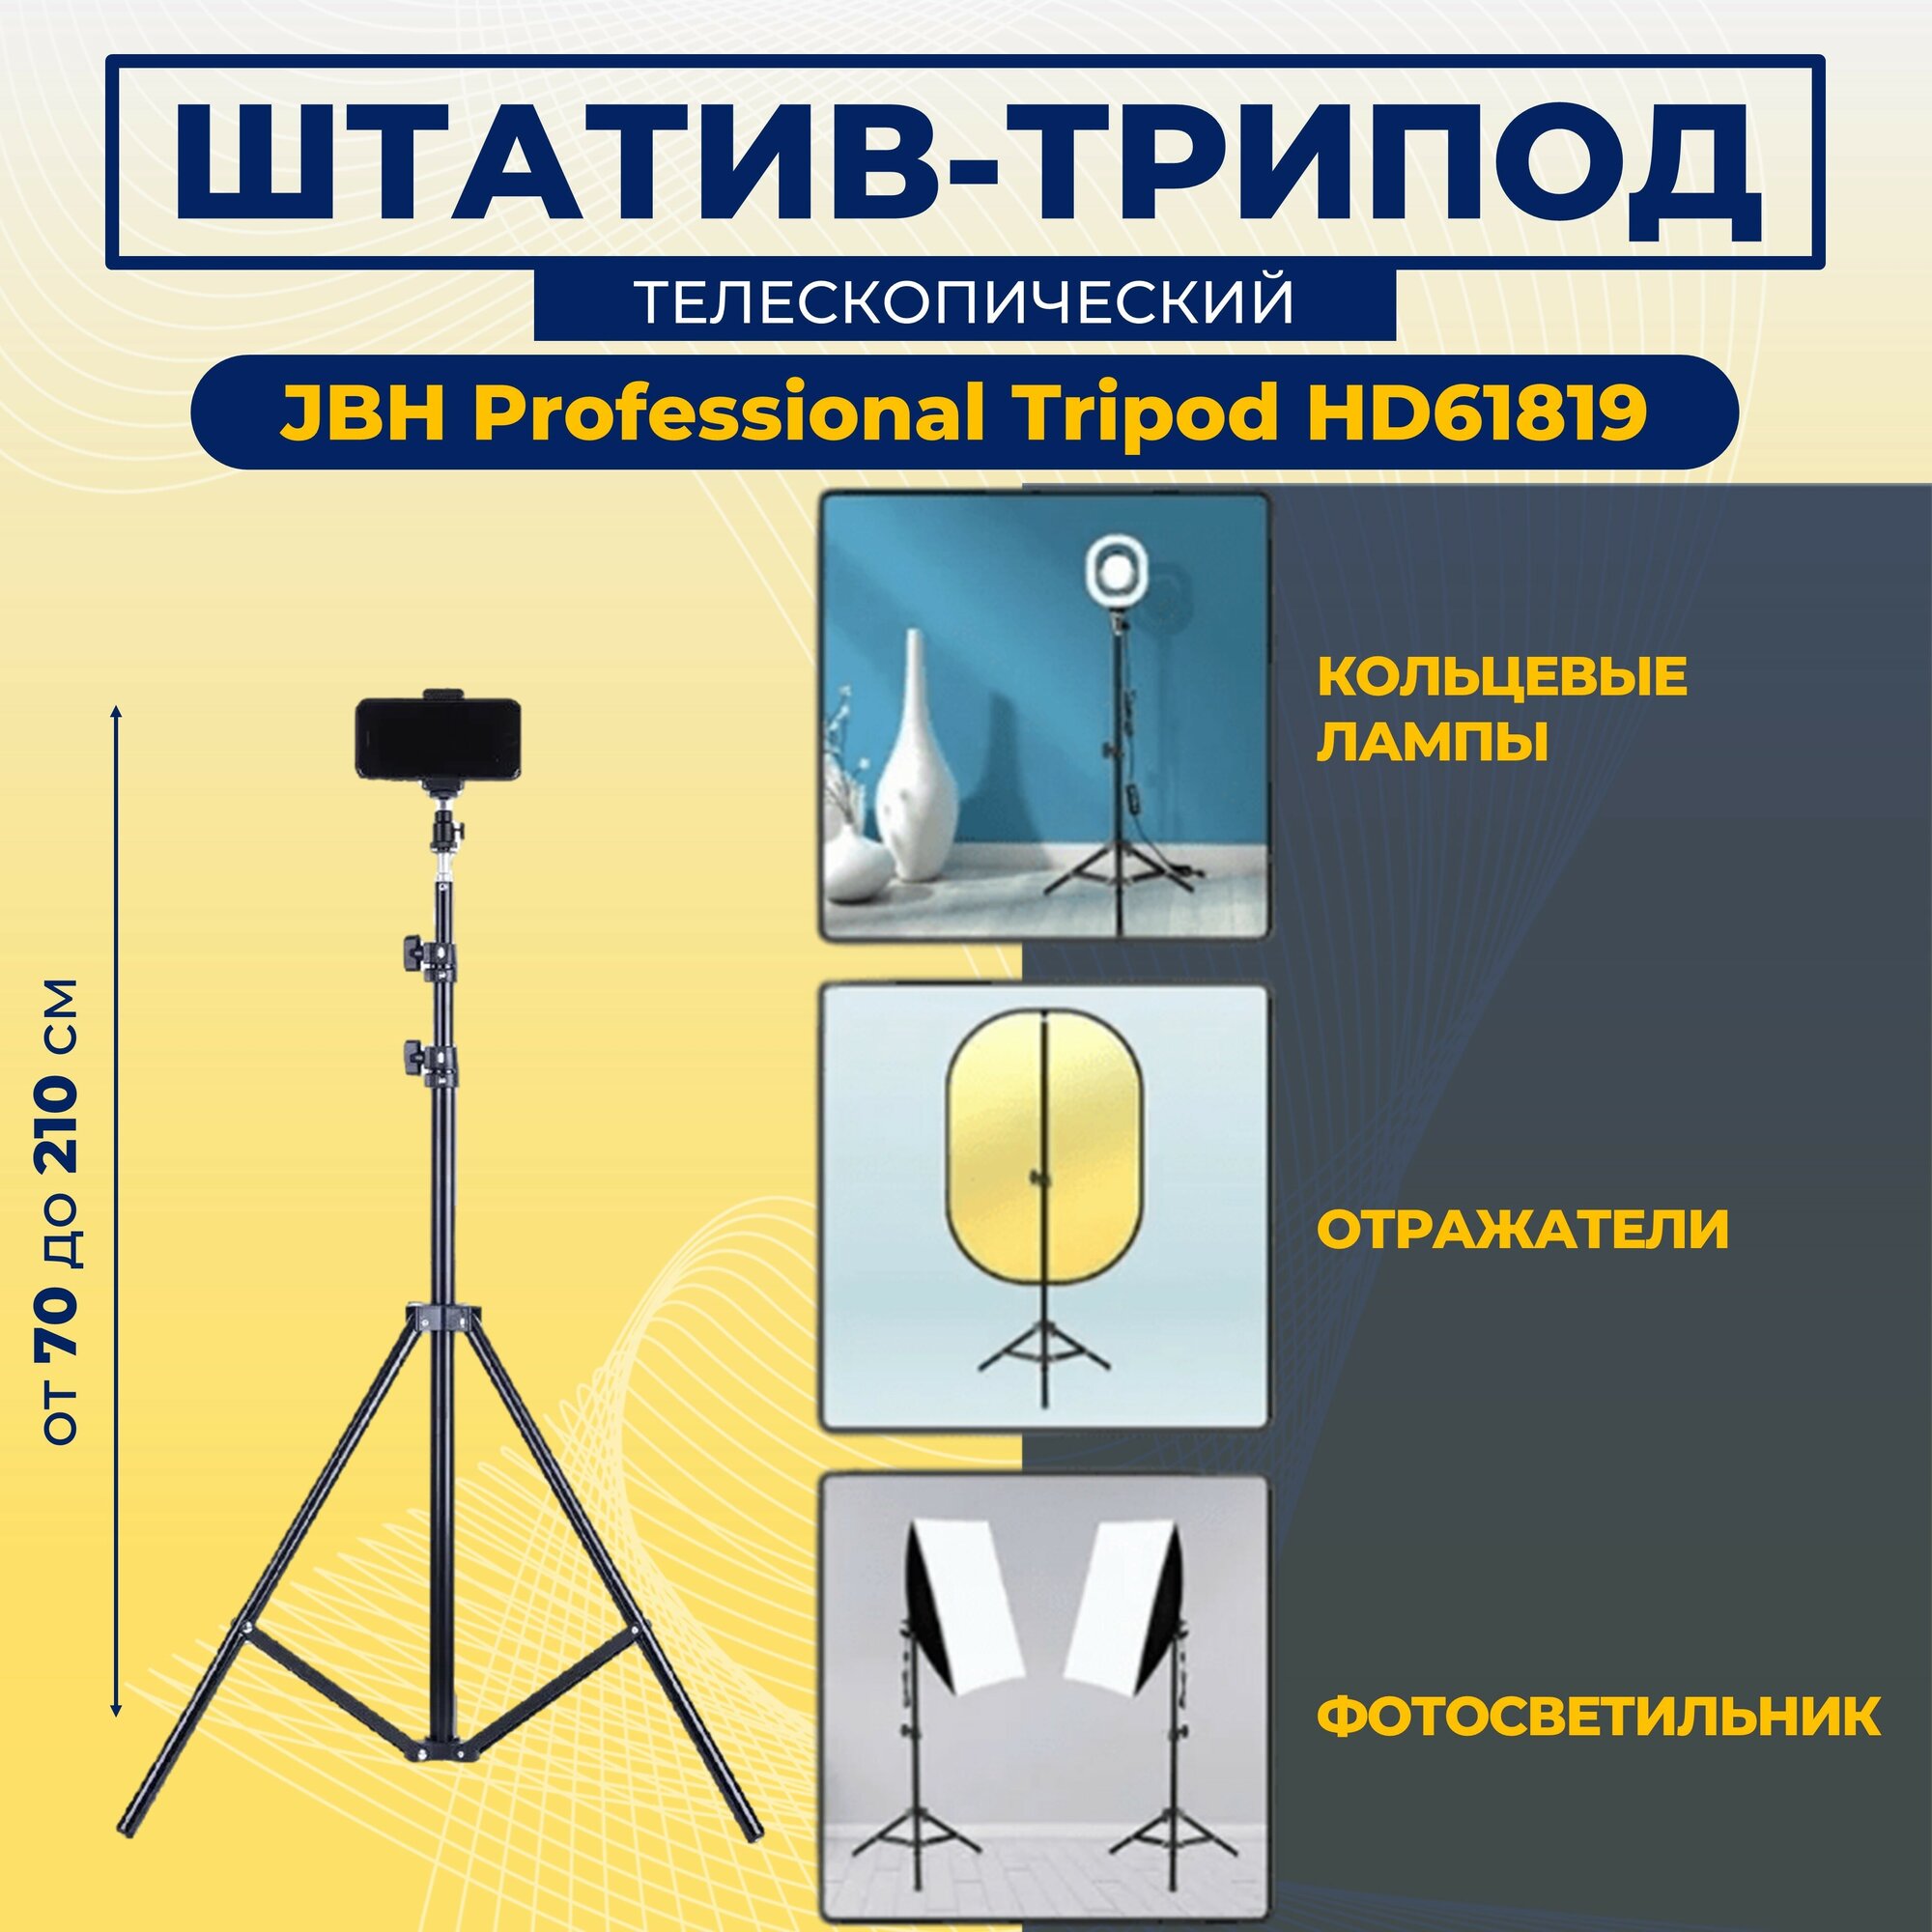 Трехсекционный Штатив универсальный профессиональный регулируемый высота от 70 до 190 JBH Professional Tripod HD61819